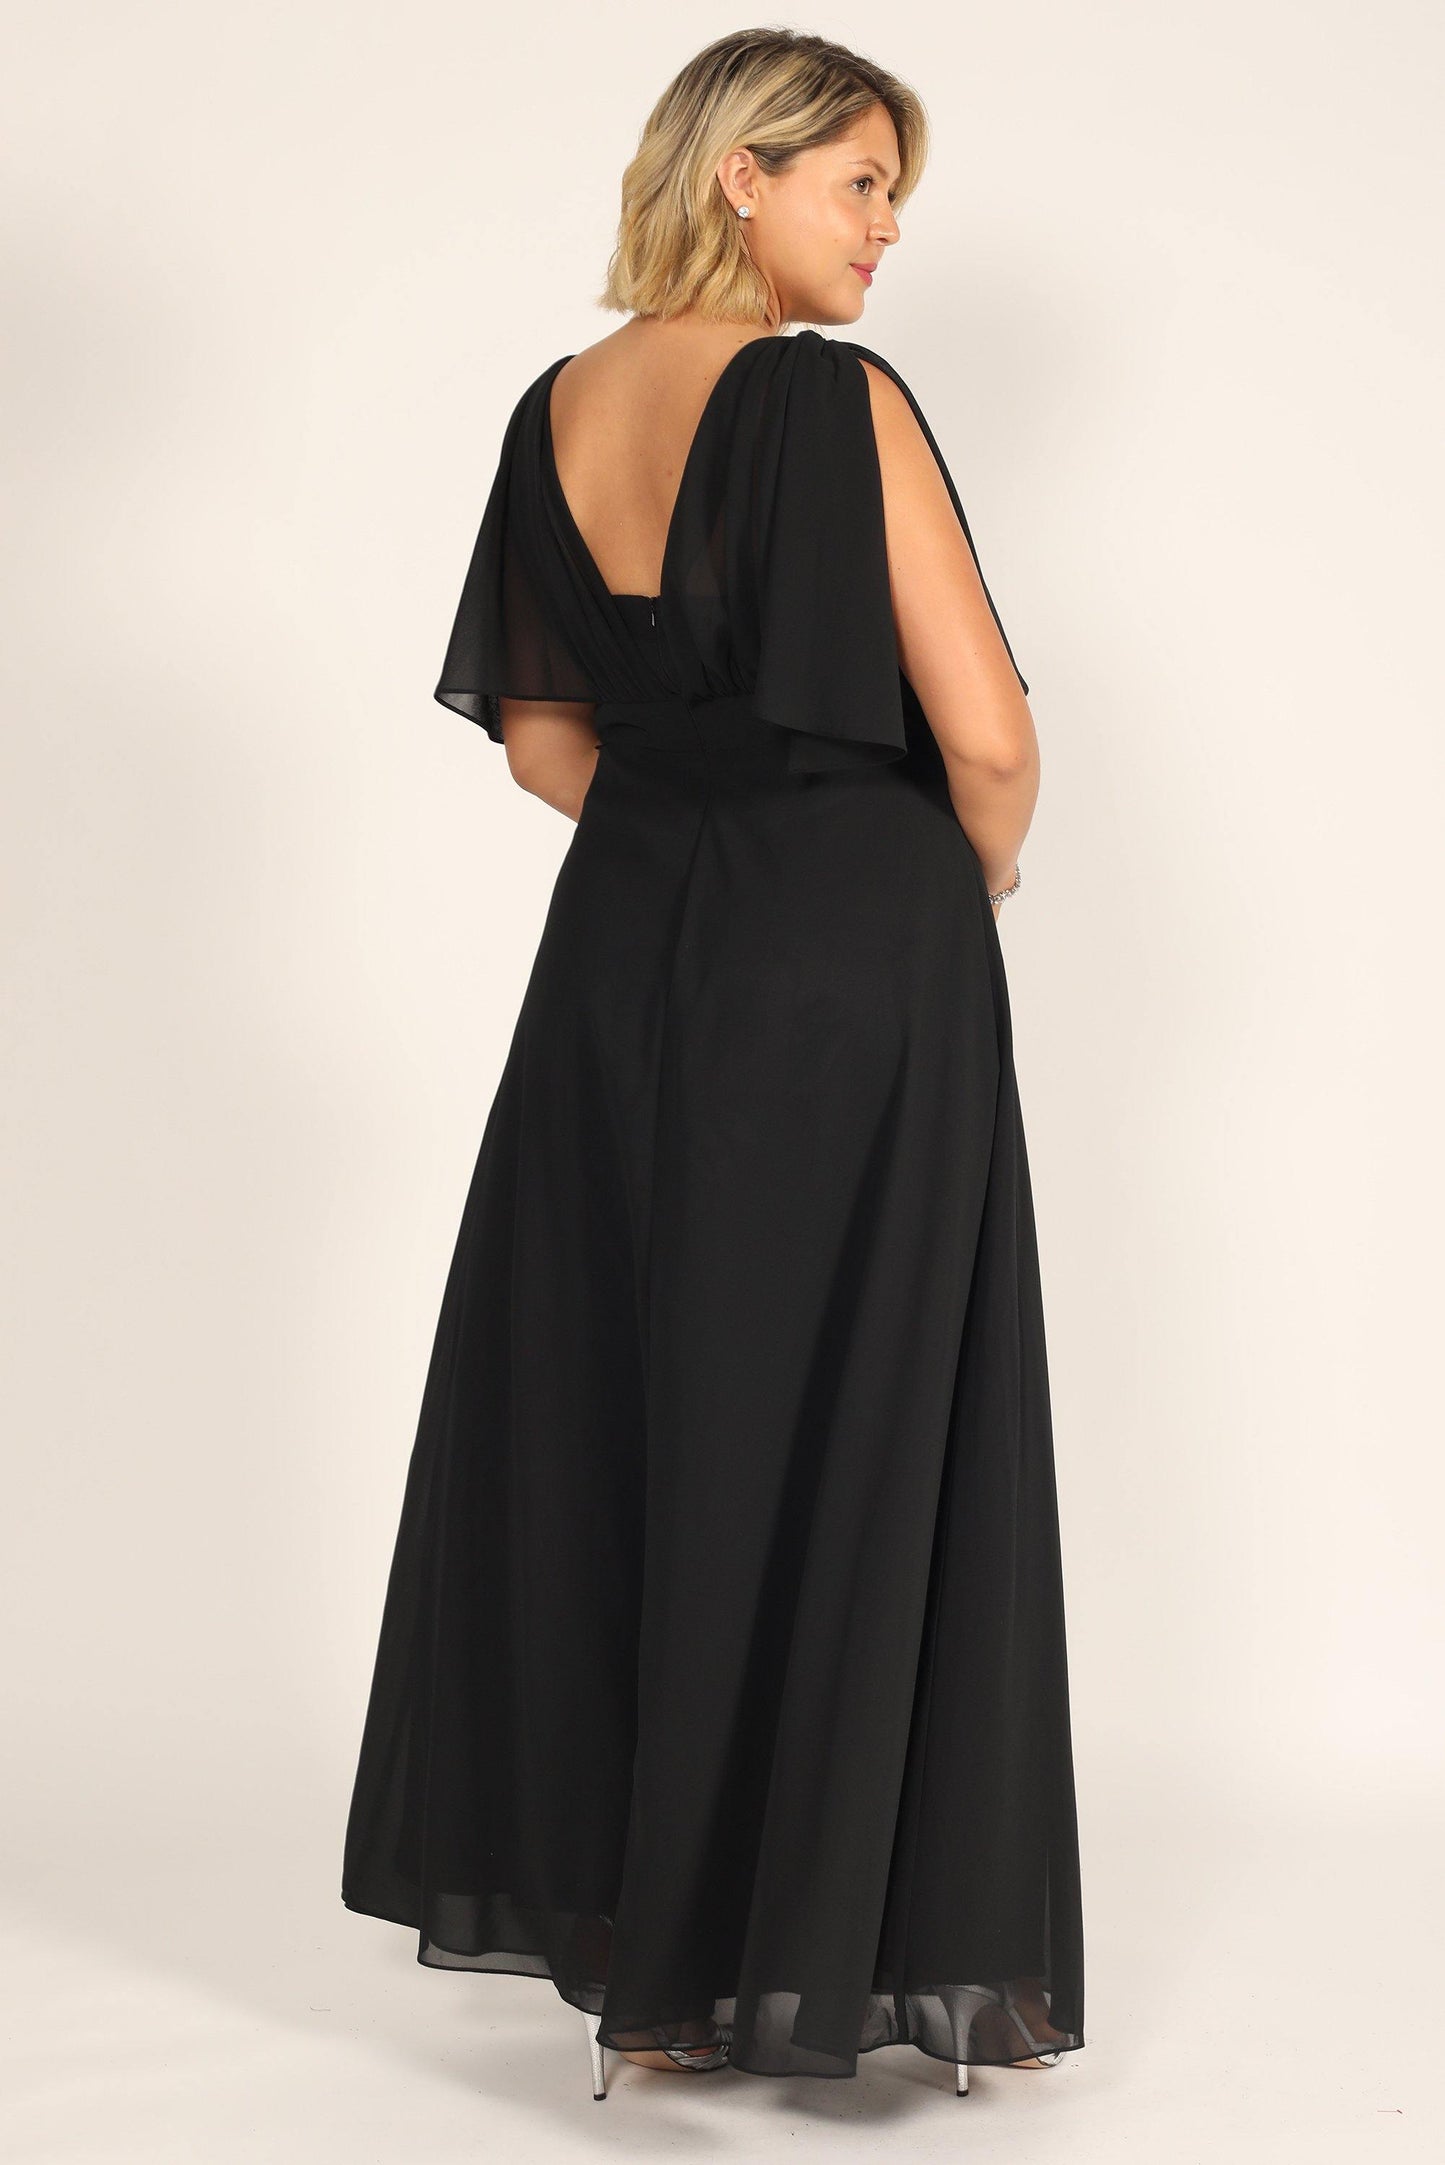 Long Formal Black Evening Dress - The Dress Outlet